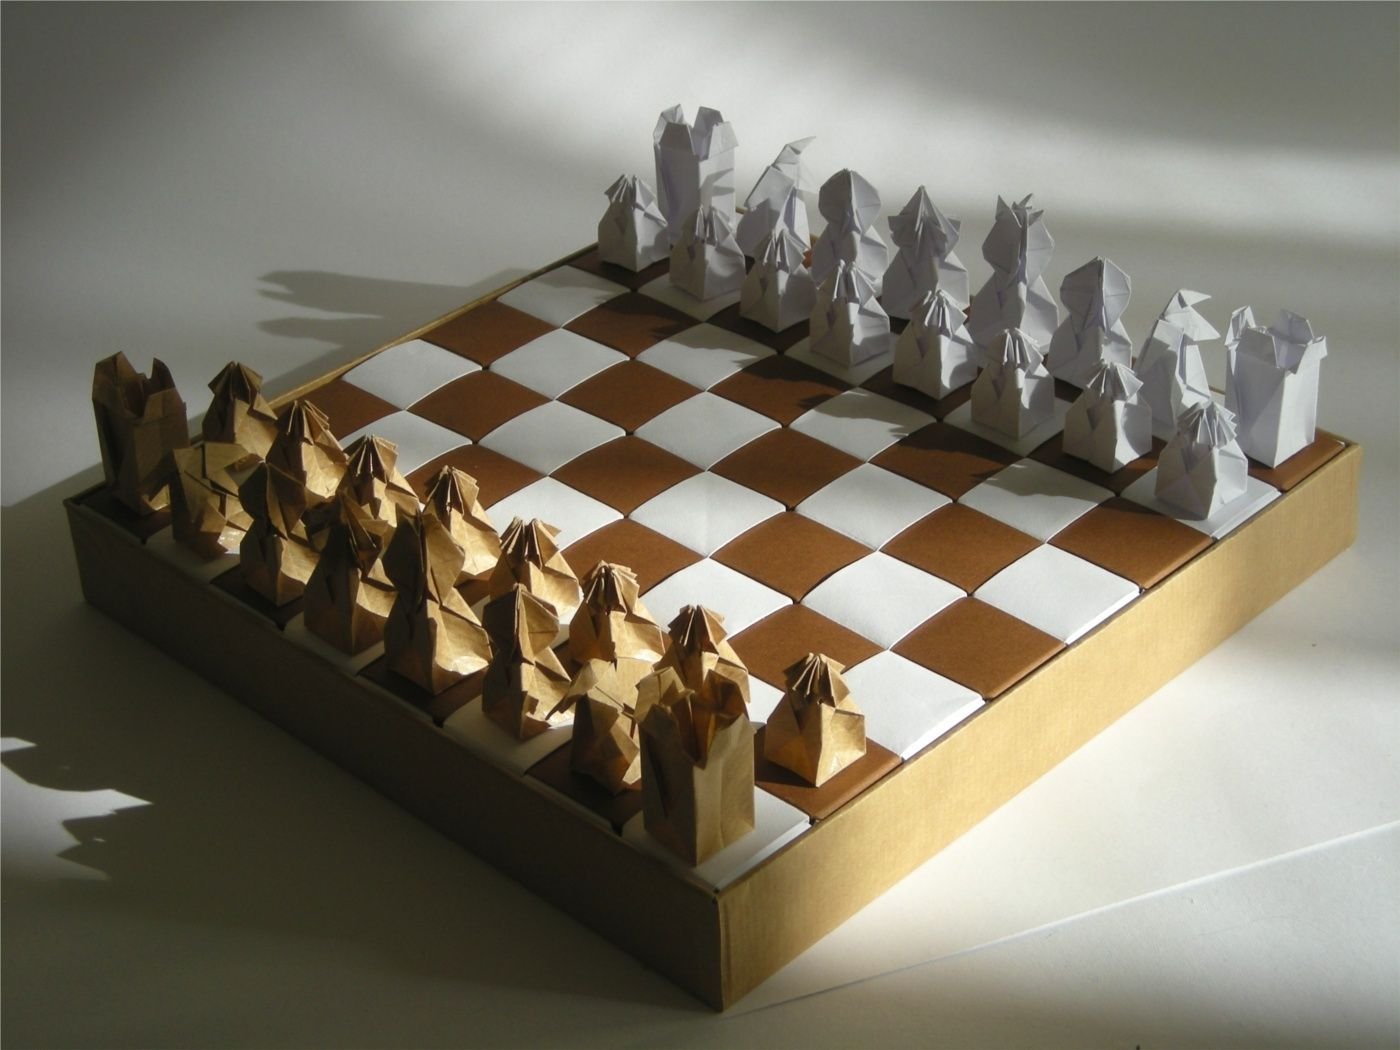 На шахматной доске поставили 5. Поделка шахматы. Шахматы из подручных материалов. Картонные шахматные фигуры. Шахматная доска.